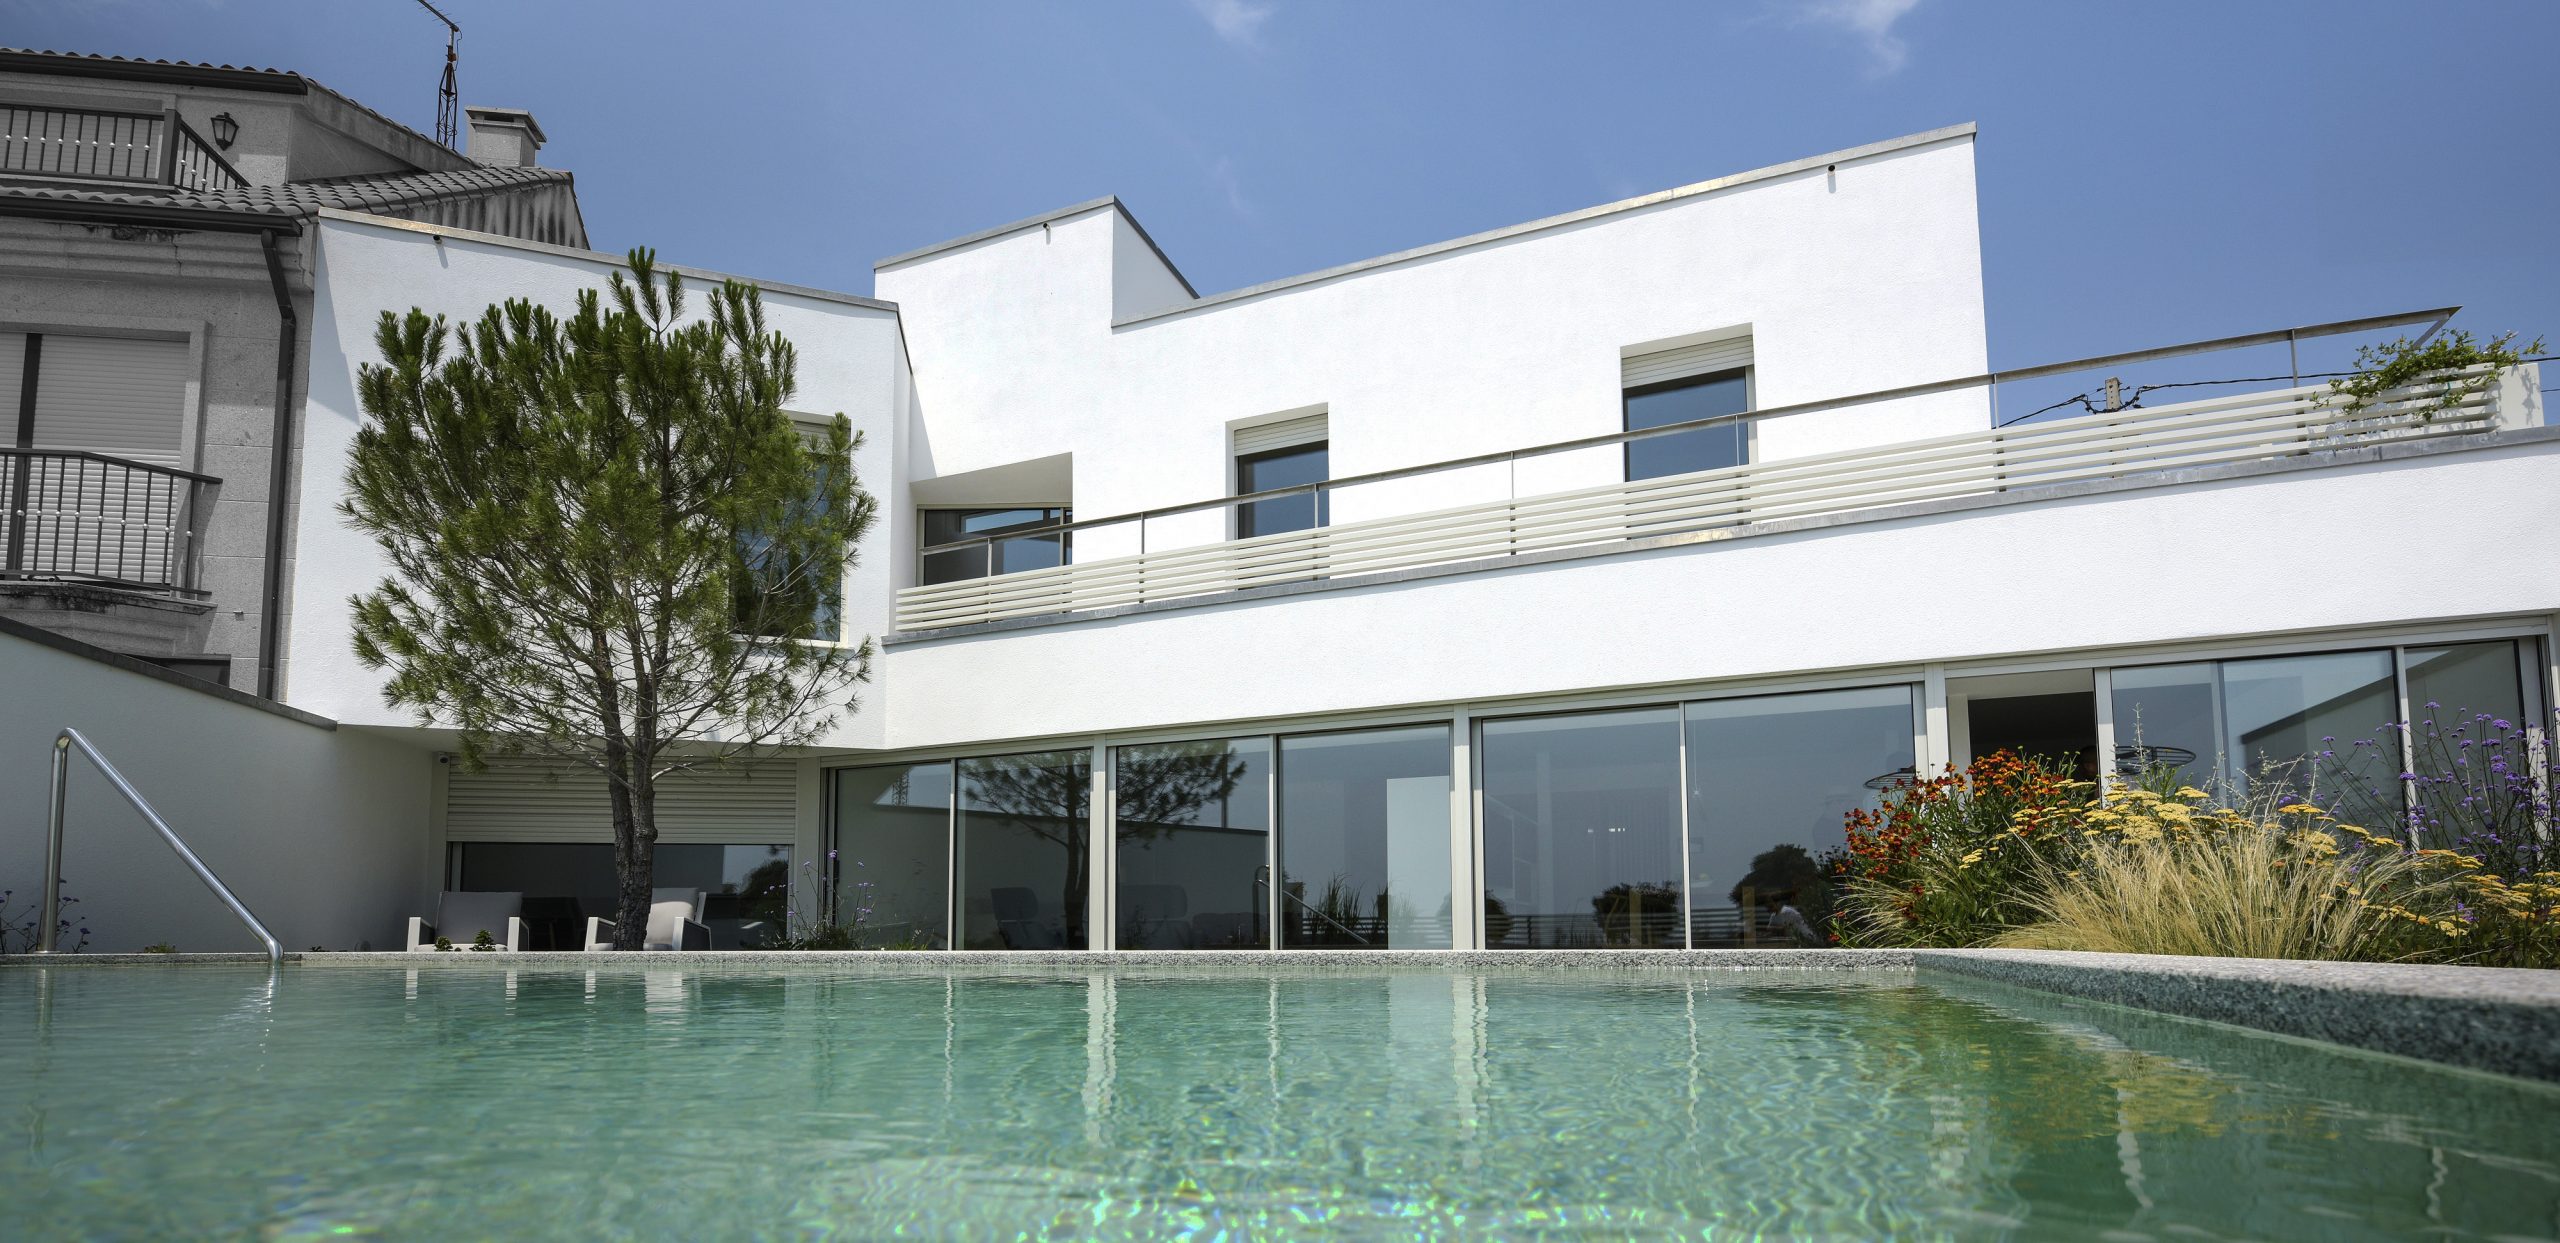 Casa Aguiño, piscina y fachada principal. Recuna Arquitectos.